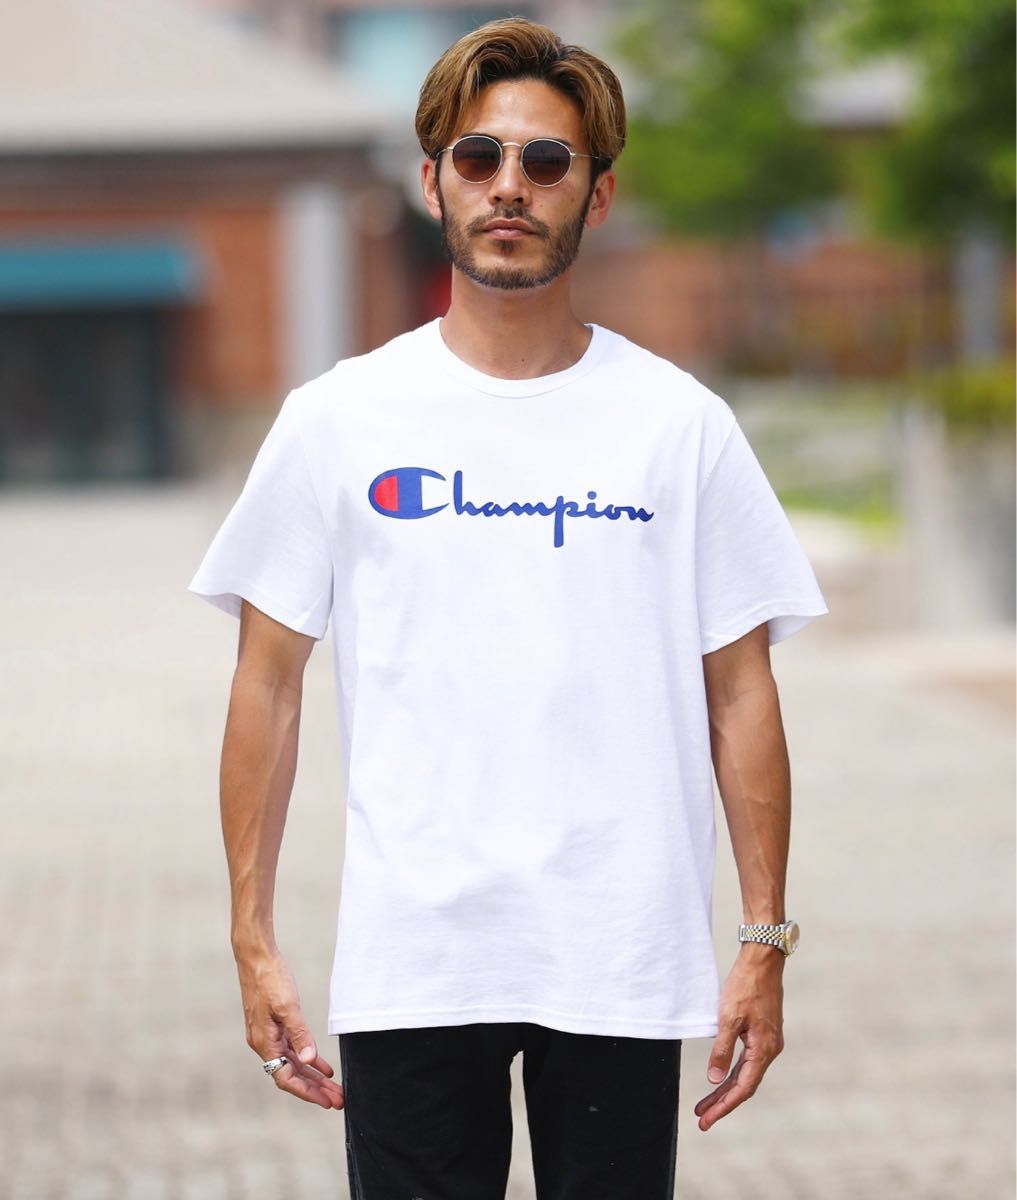 【Champion(チャンピオン) 4,950円/スクリプト ロゴ クルーネック Tシャツ】LLサイズ